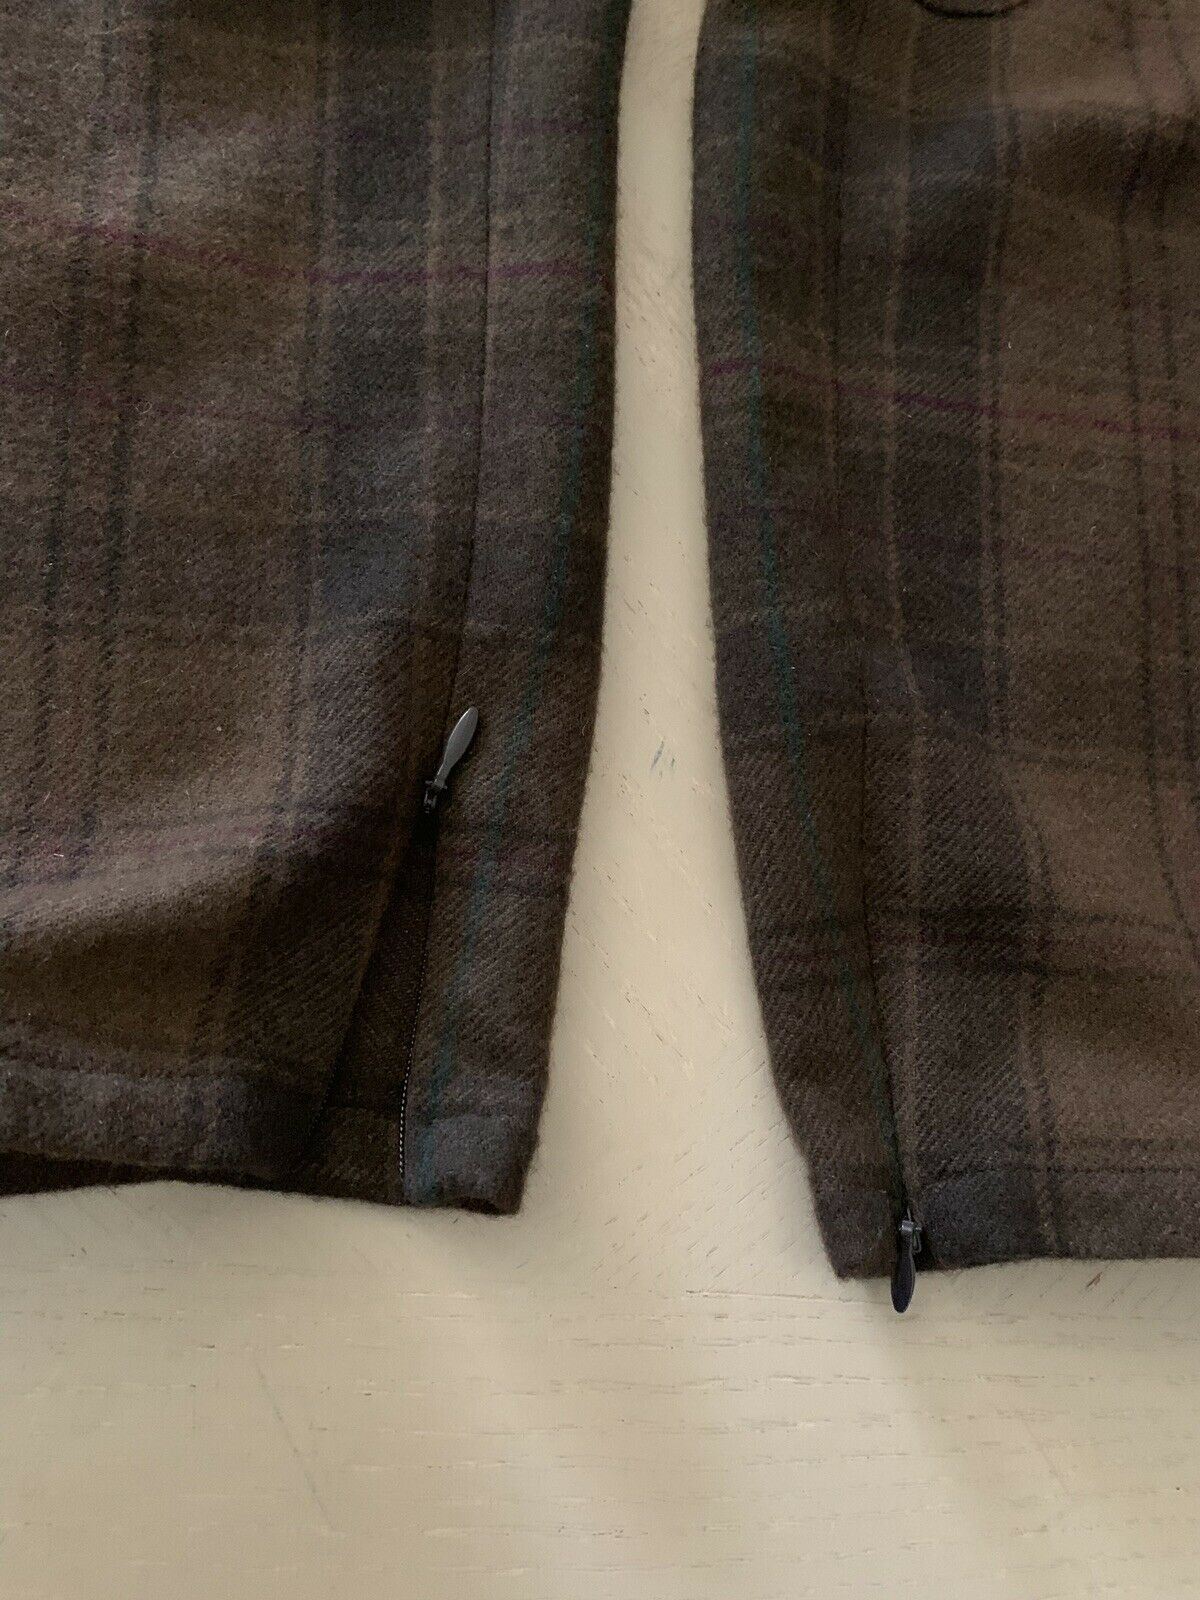 Женские брюки Ralph Lauren Collection Purple Label, коричневые 6, $1895, коричневый 6 США